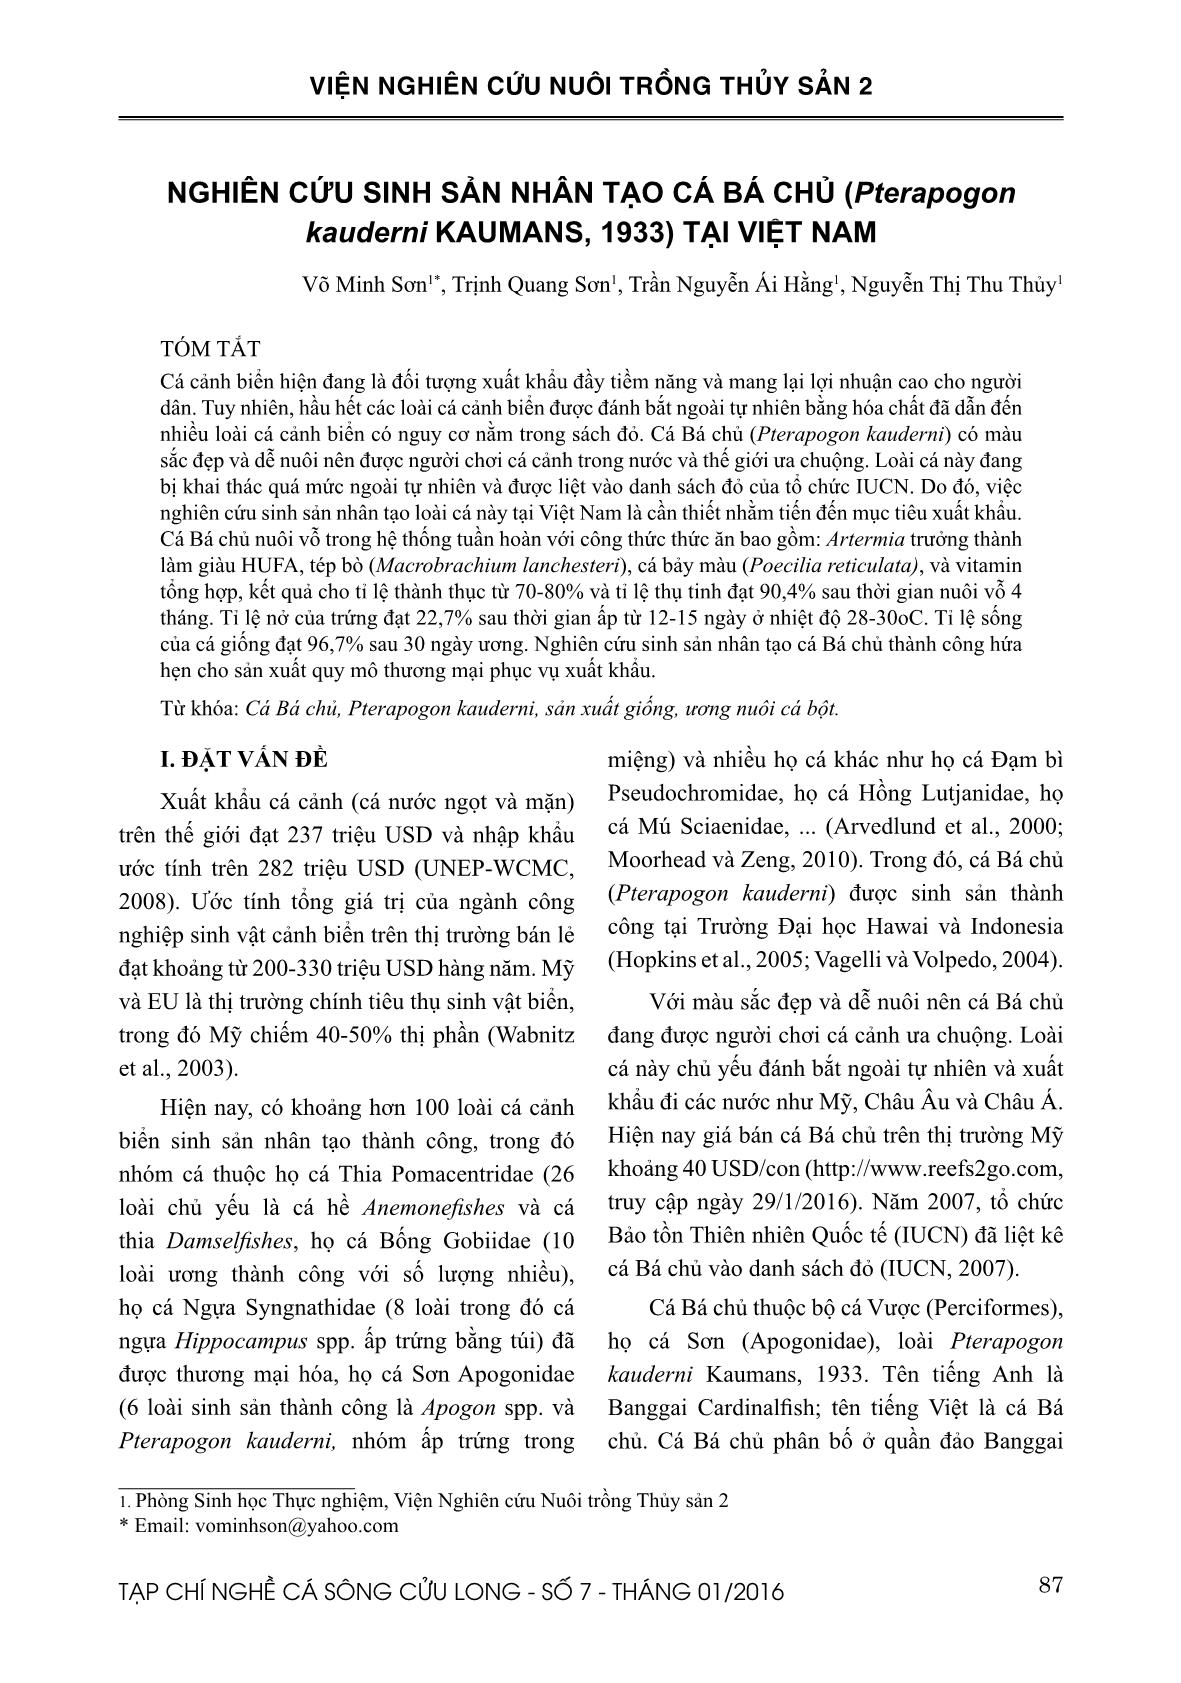 Nghiên cứu sinh sản nhân tạo cá bá chủ (Pterapogon kauderni Kaumans, 1933) tại Việt Nam trang 1